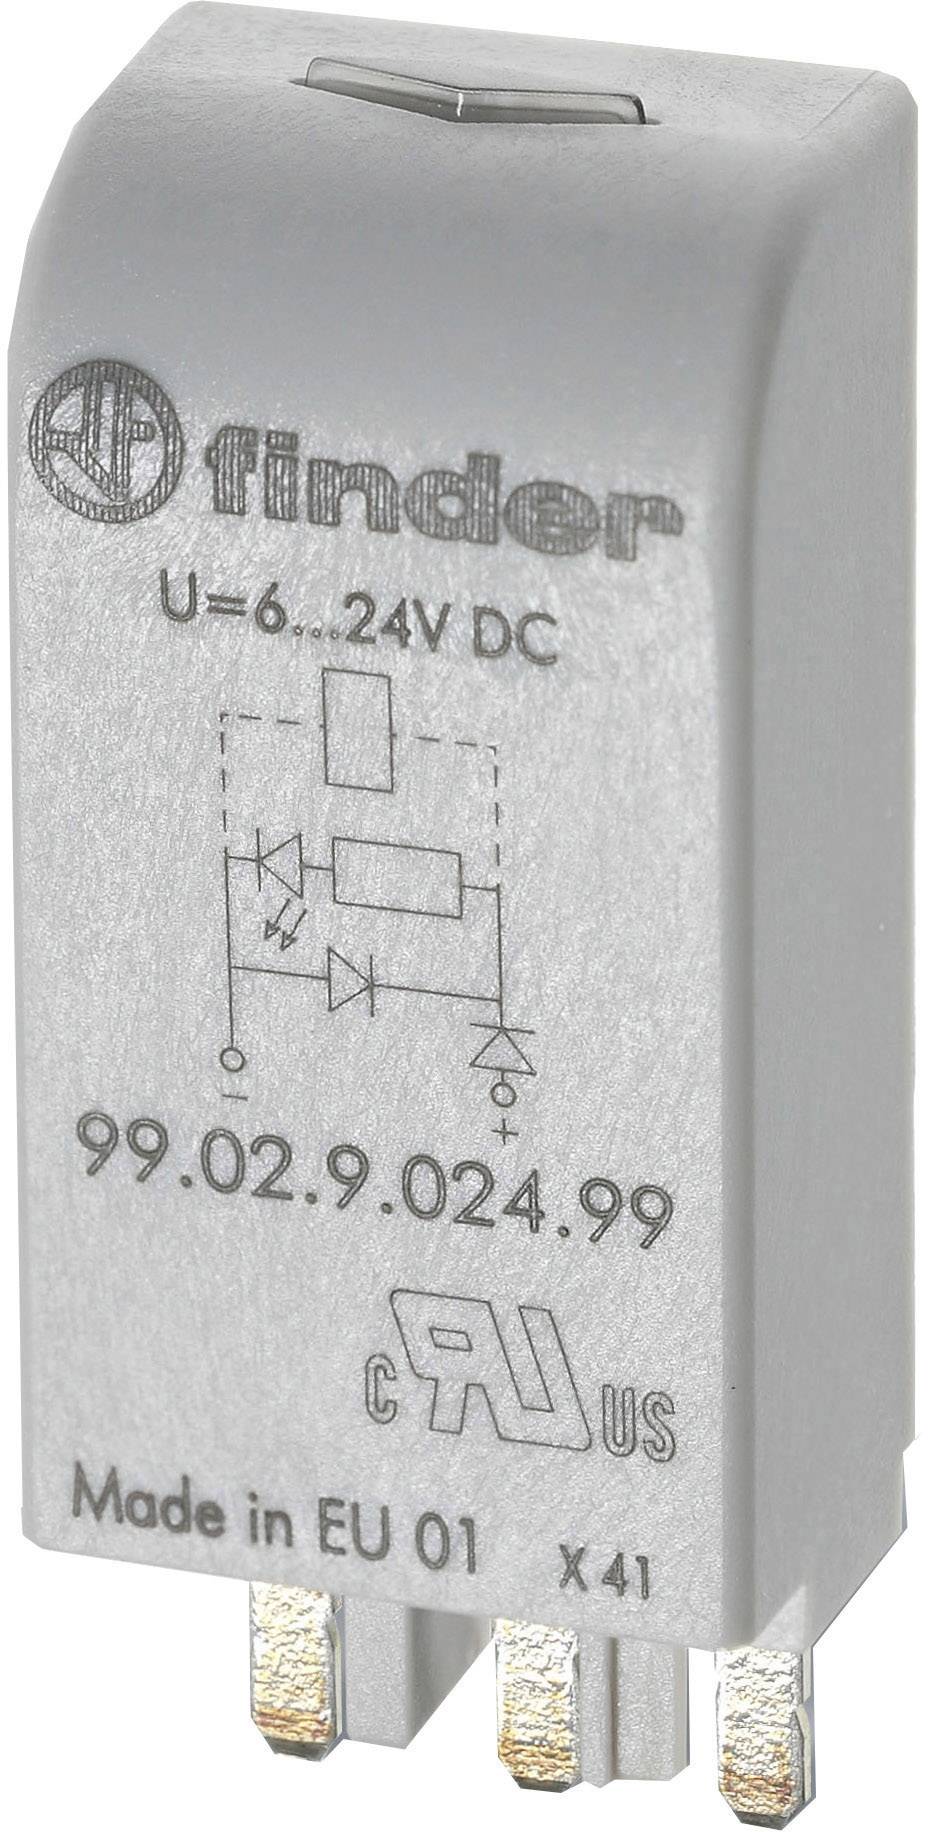 FINDER Steckmodul mit LED, mit Varistor 1 St. Finder 99.02.0.024.98 Passend für Serie: Finder Serie